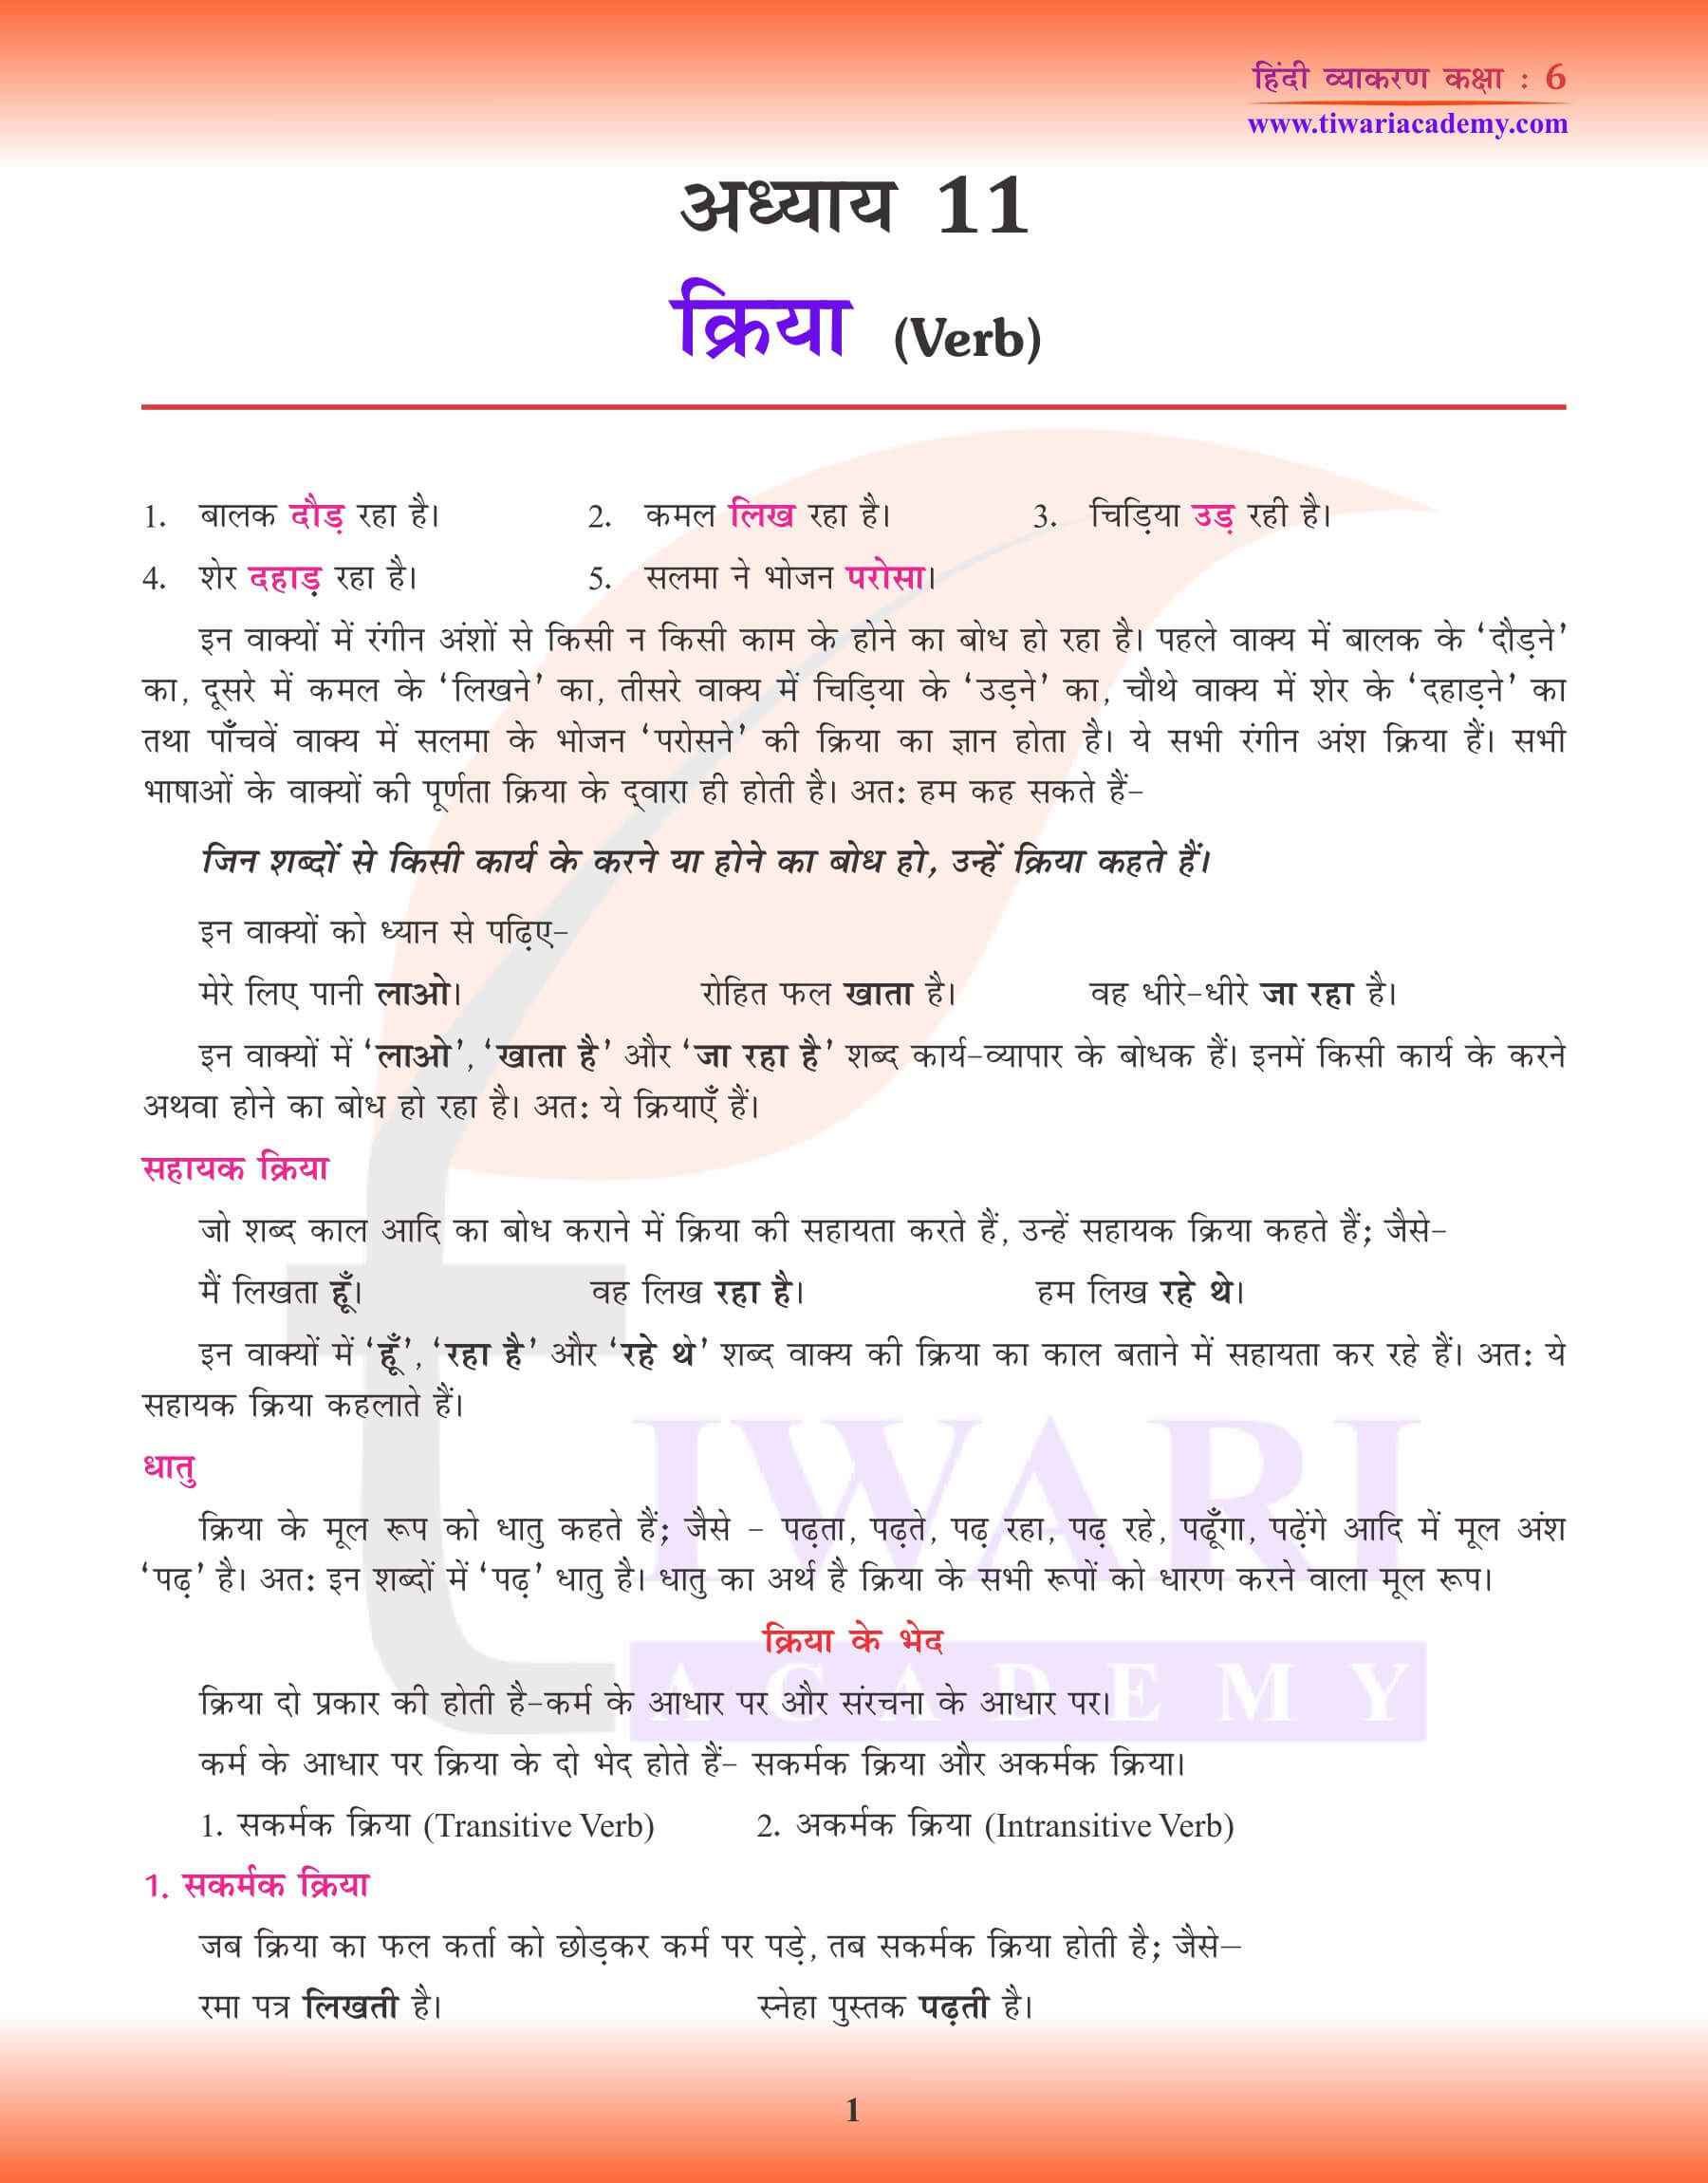 कक्षा 6 हिंदी व्याकरण पाठ 11 अभ्यास पुस्तिका